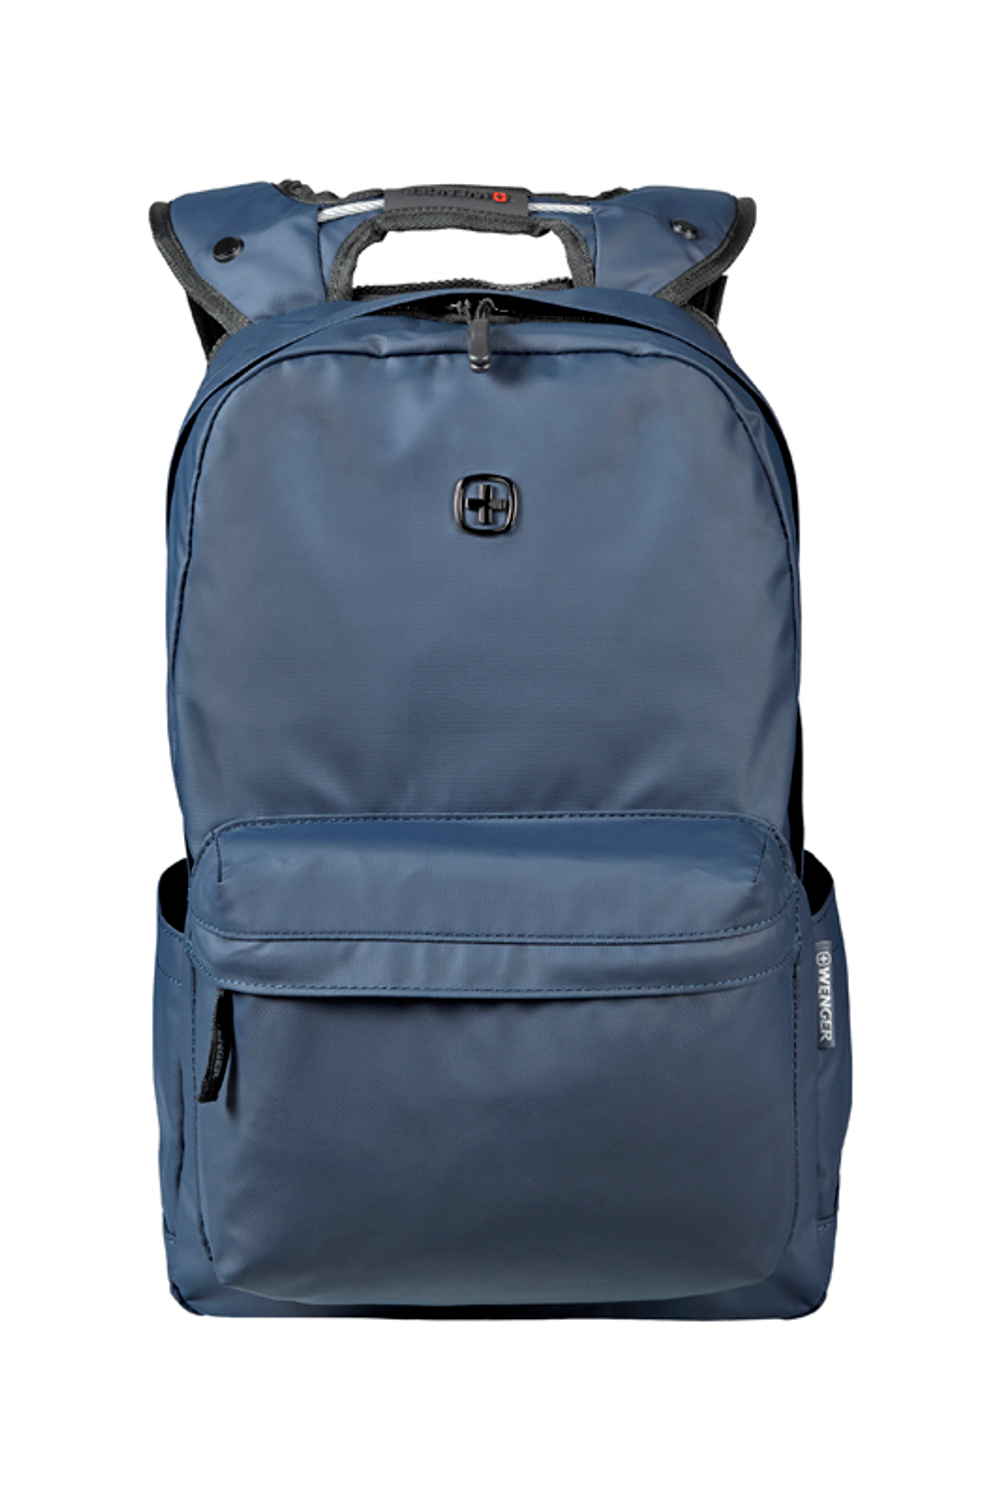 Городской рюкзак с водоотталкивающим покрытием синий (18 л) WENGER Photon 605096